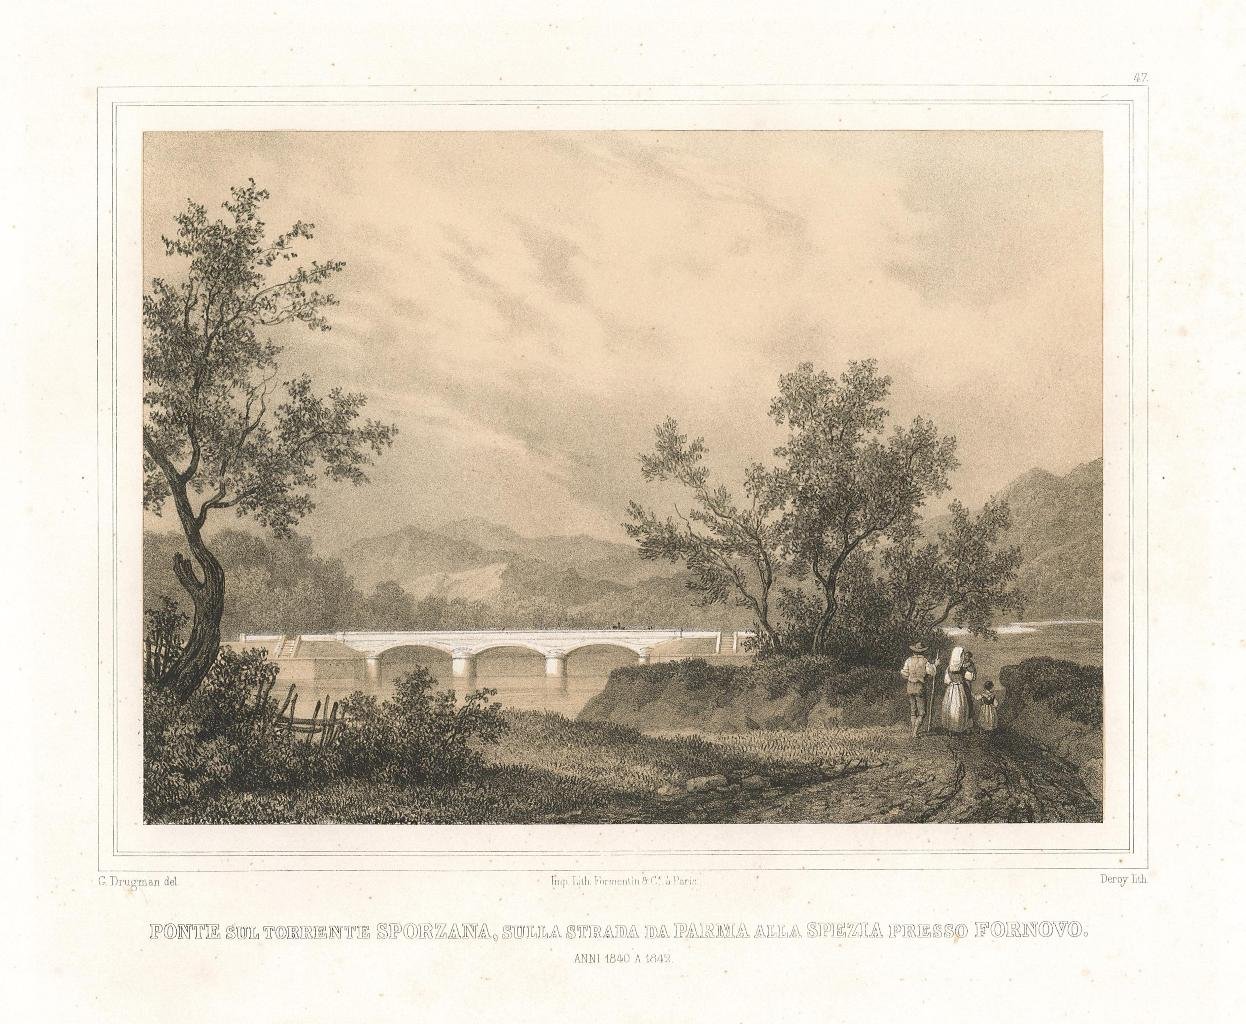 Ponte sul Torrente Sporzana sulla strada da Parma alla Spezia …